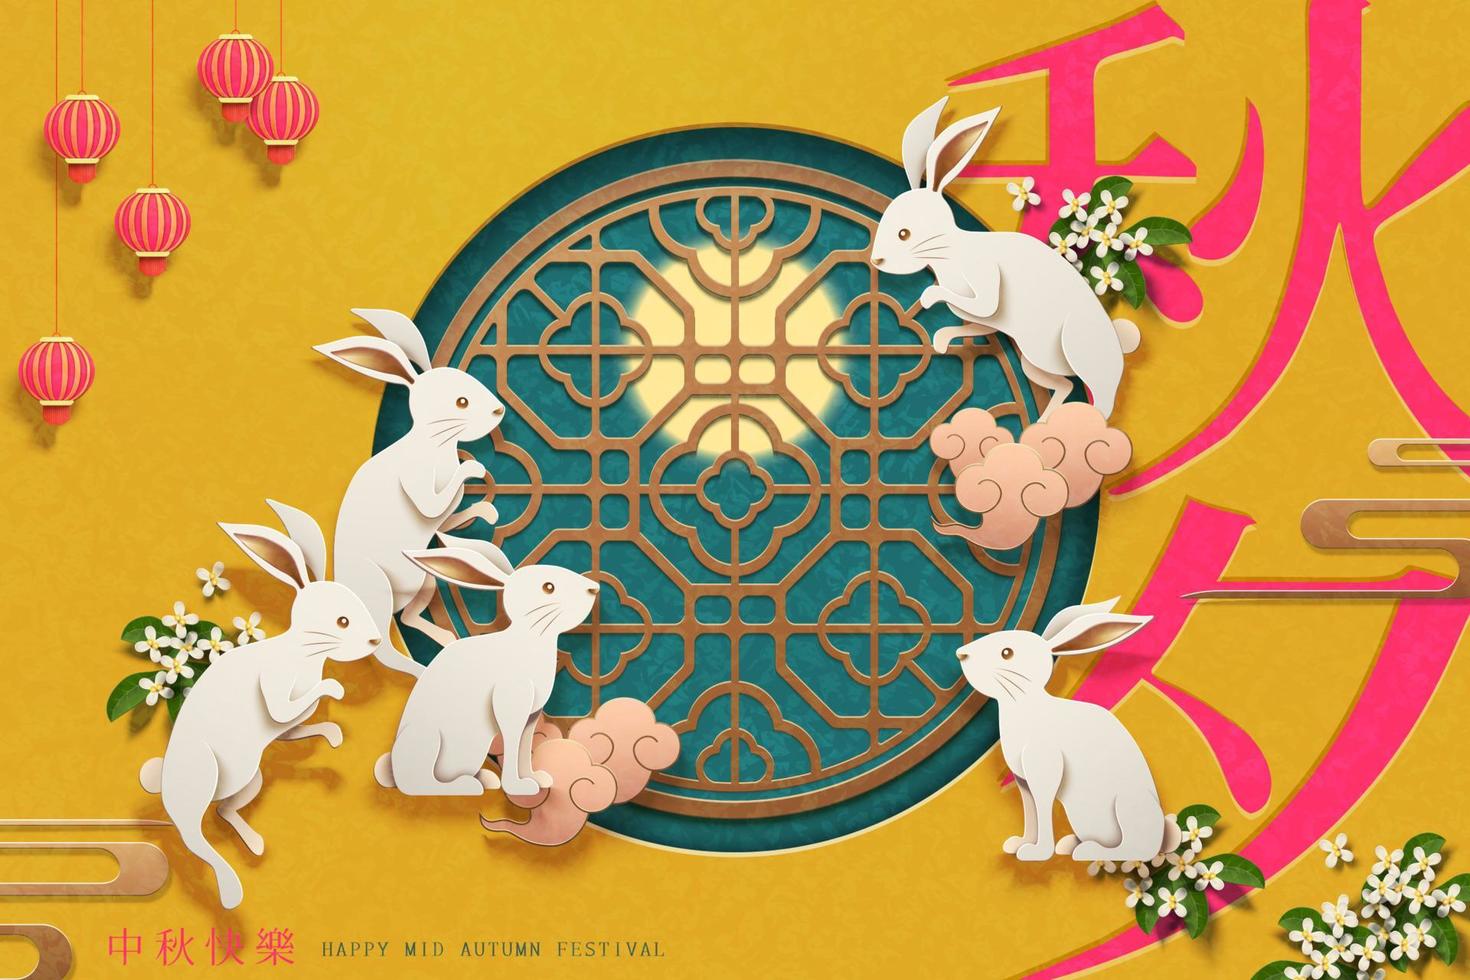 papper konst kaniner runt om de kinesisk fönster ram på gul bakgrund, måne festival och ett höst natt ord skriven i kinesisk tecken vektor